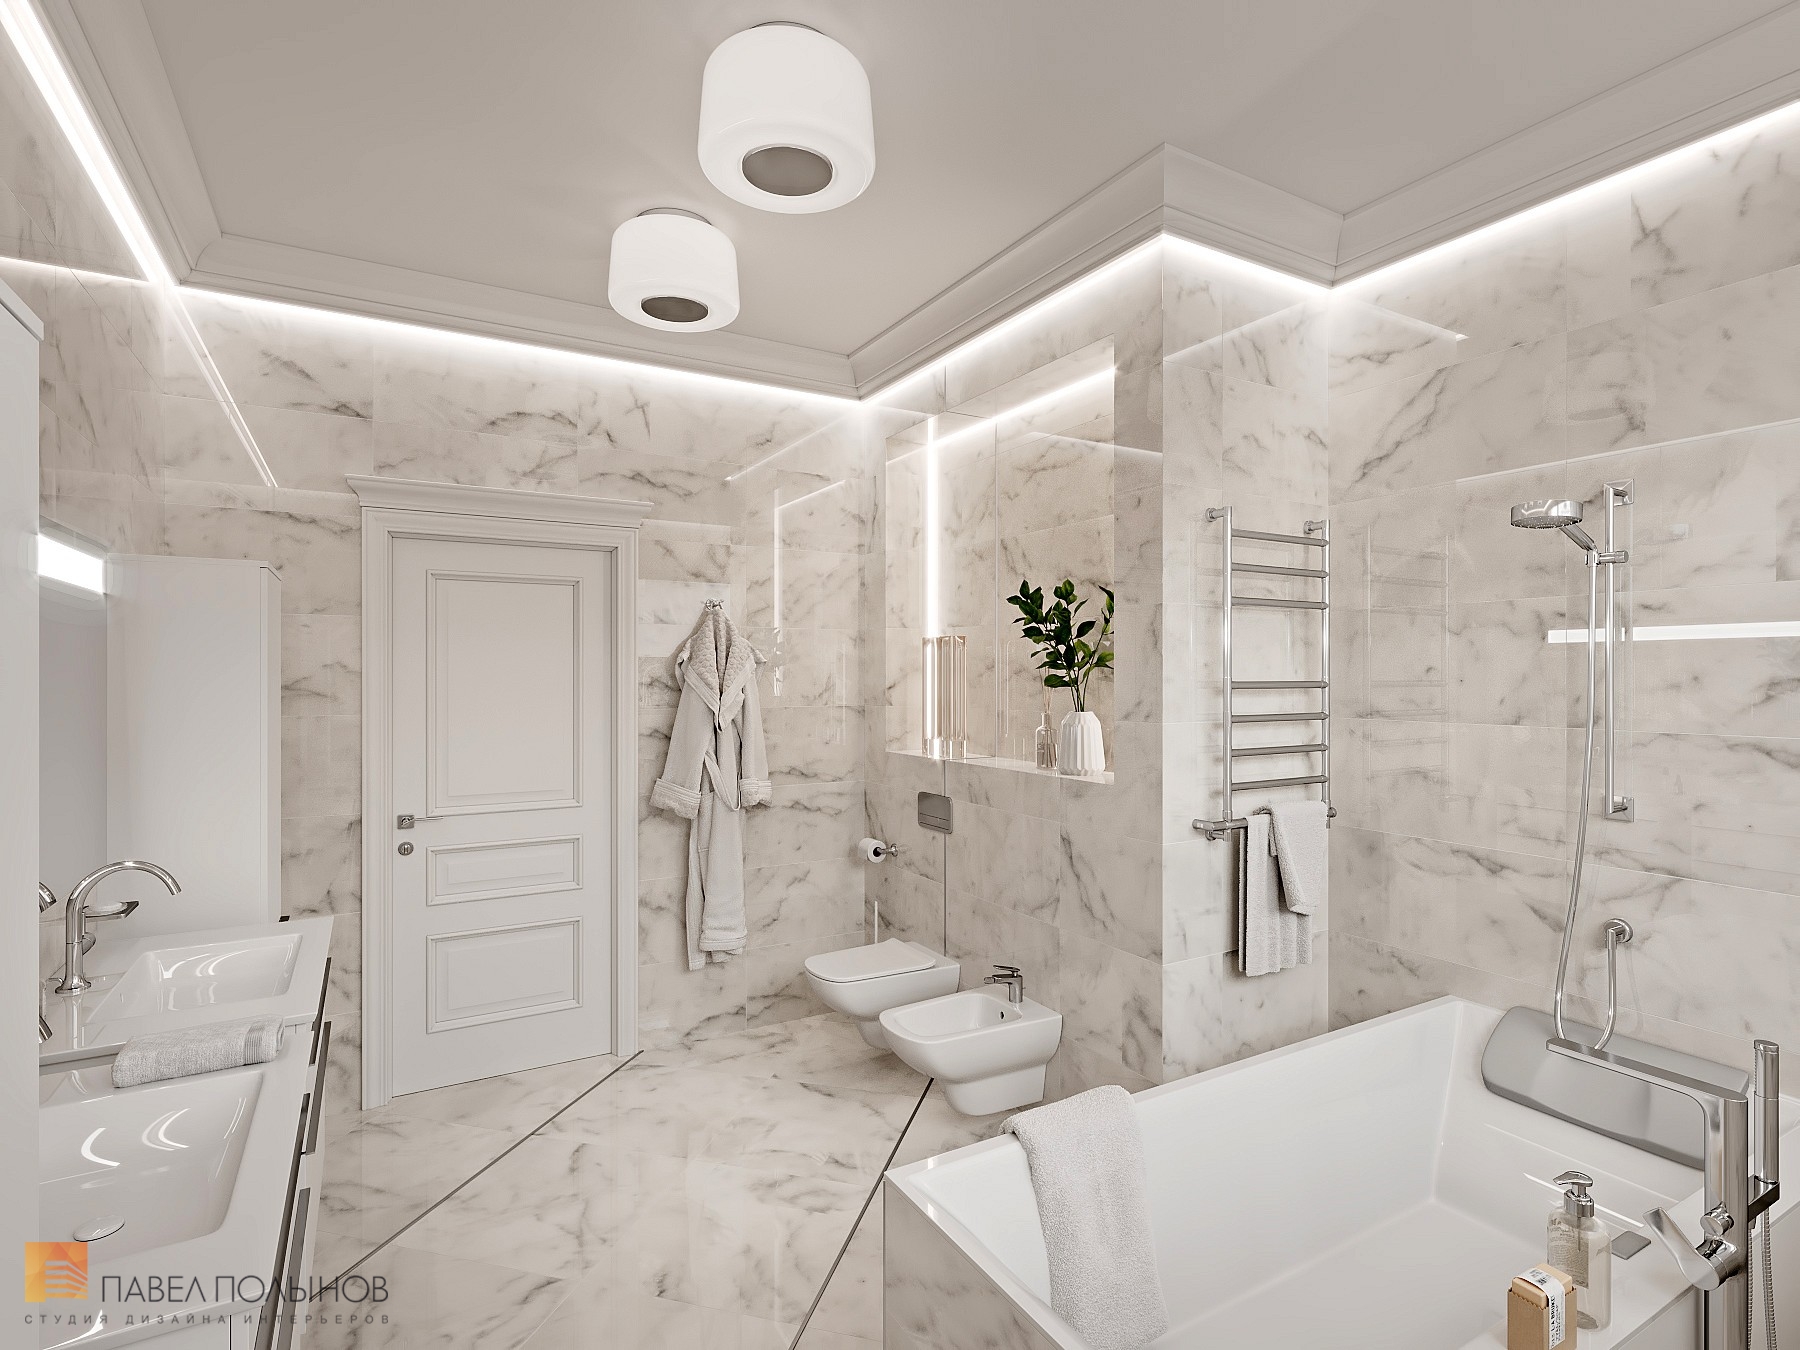 Фото интерьер ванной комнаты из проекта «Интерьер квартиры 200 кв.м. в стиле Ар-деко, ЖК «Граф Орлов»»